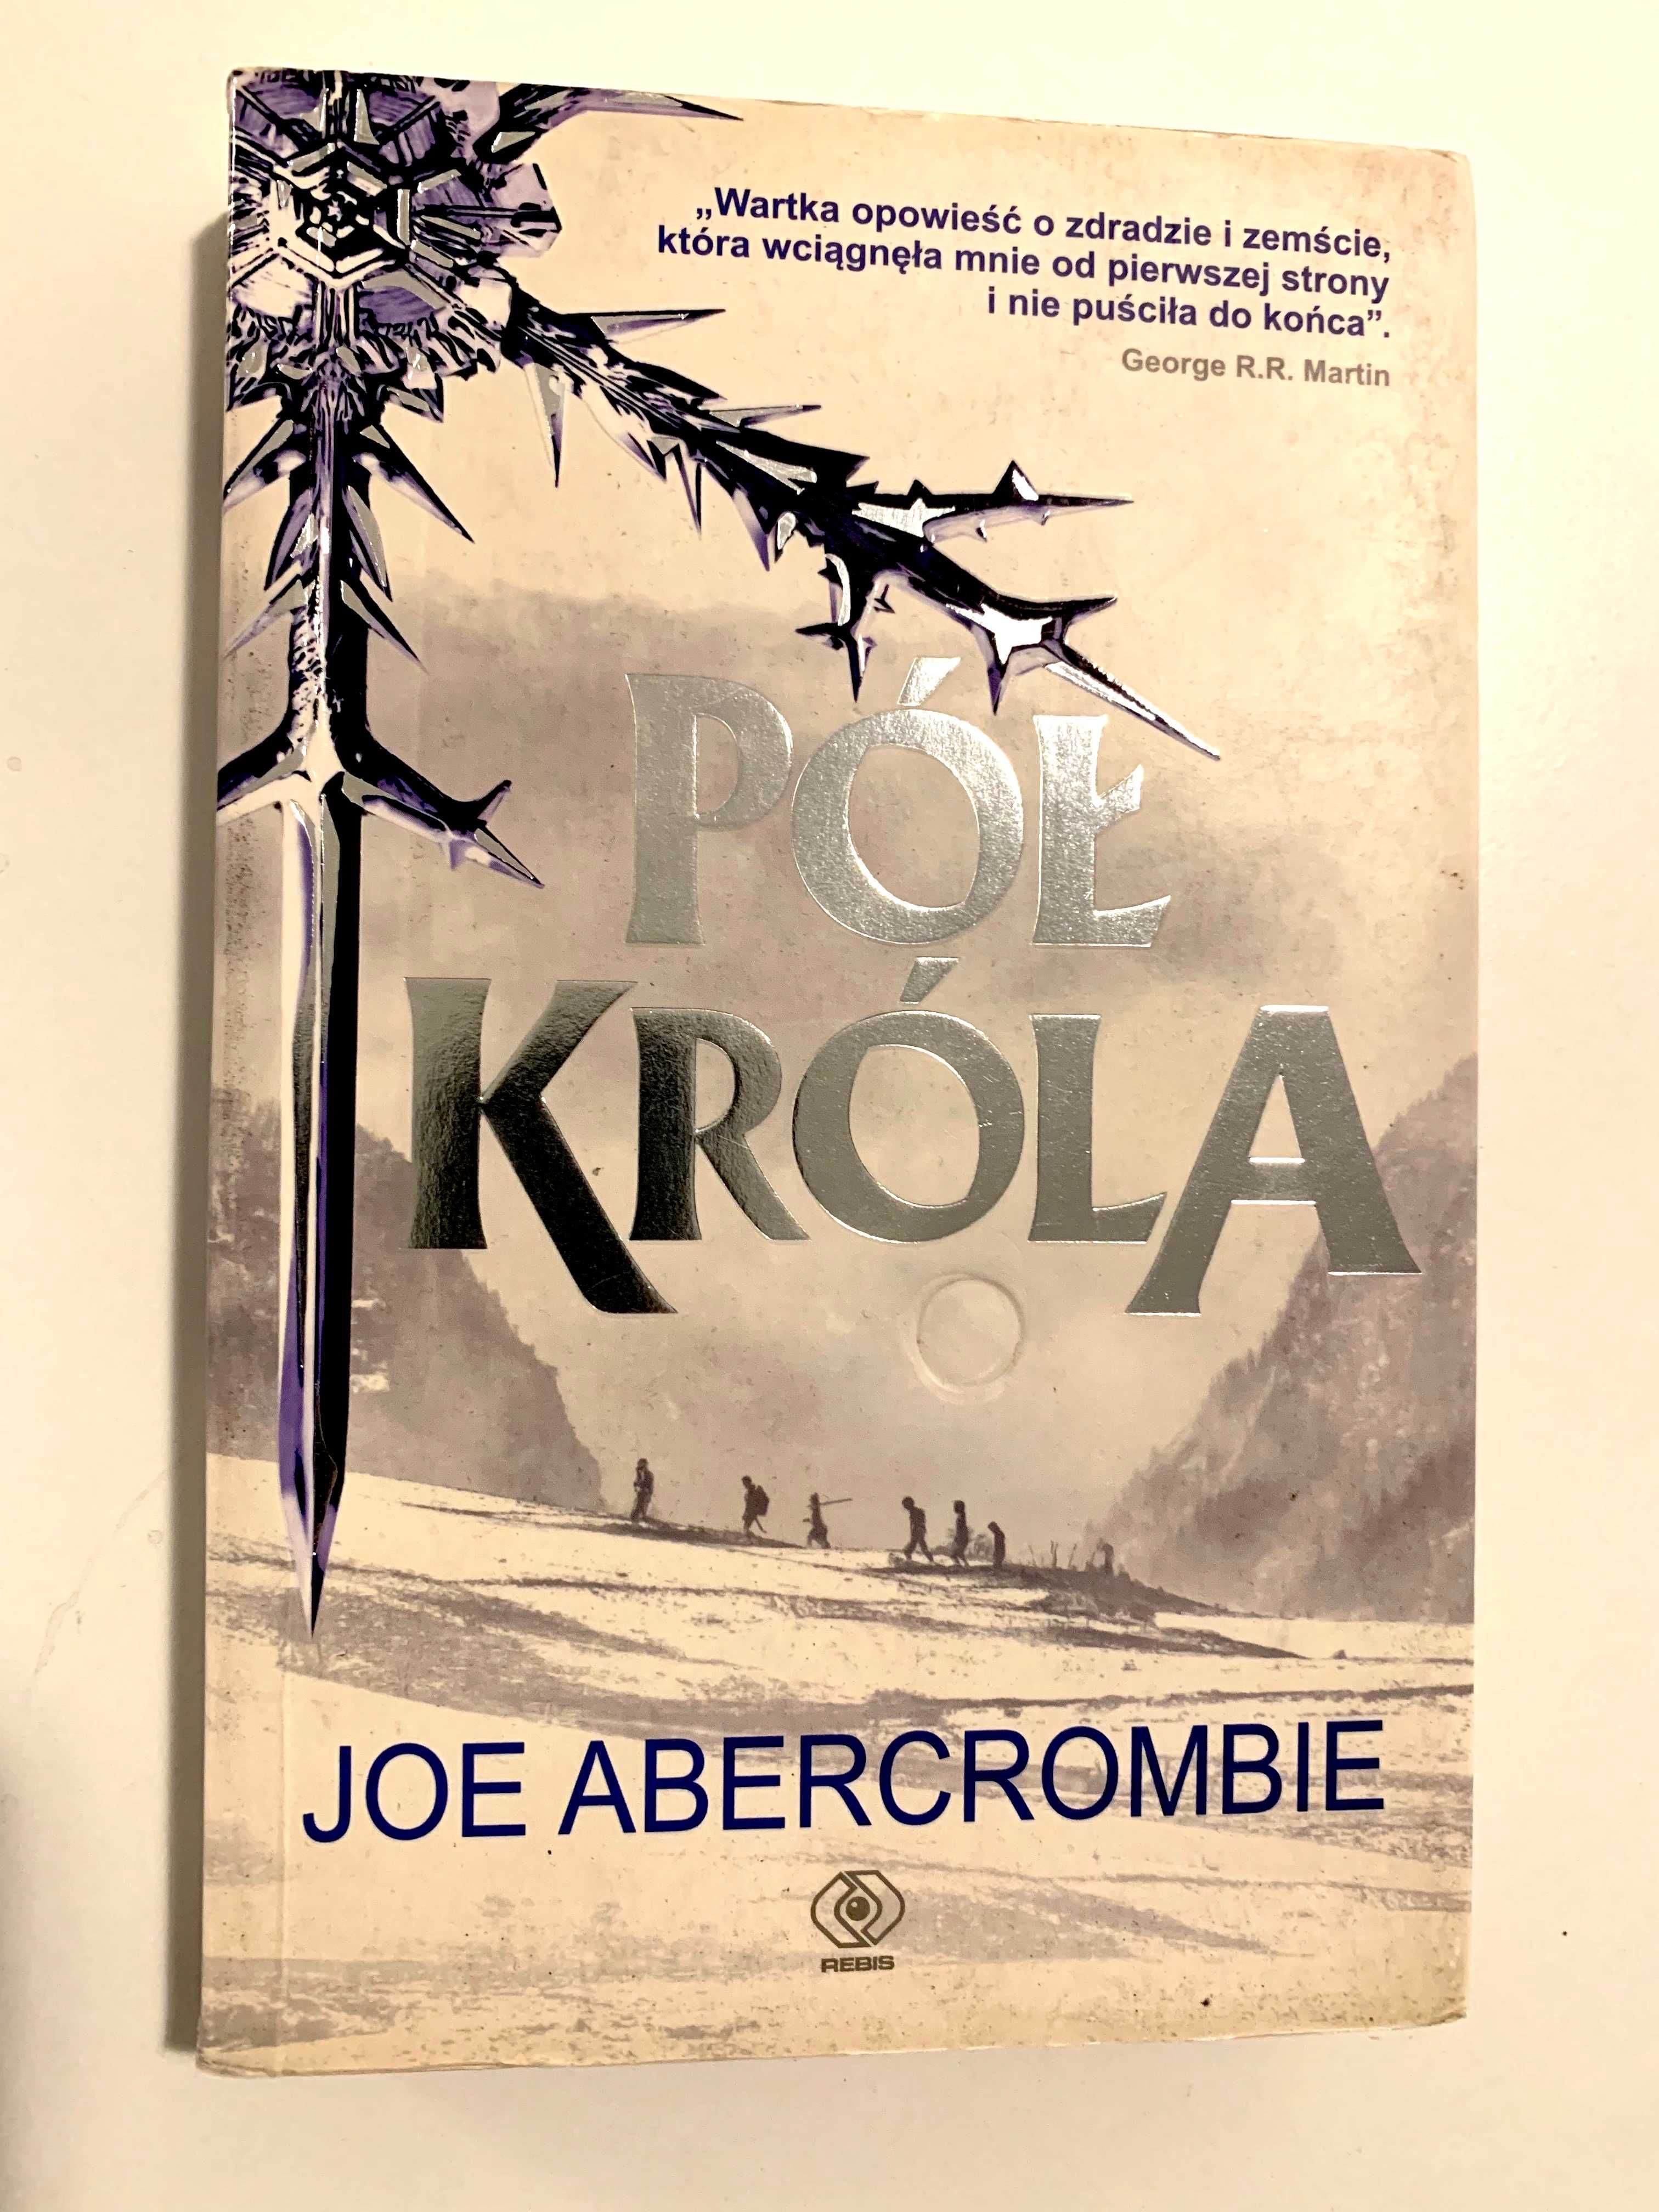 Joe Abercrombie - Pół Króla